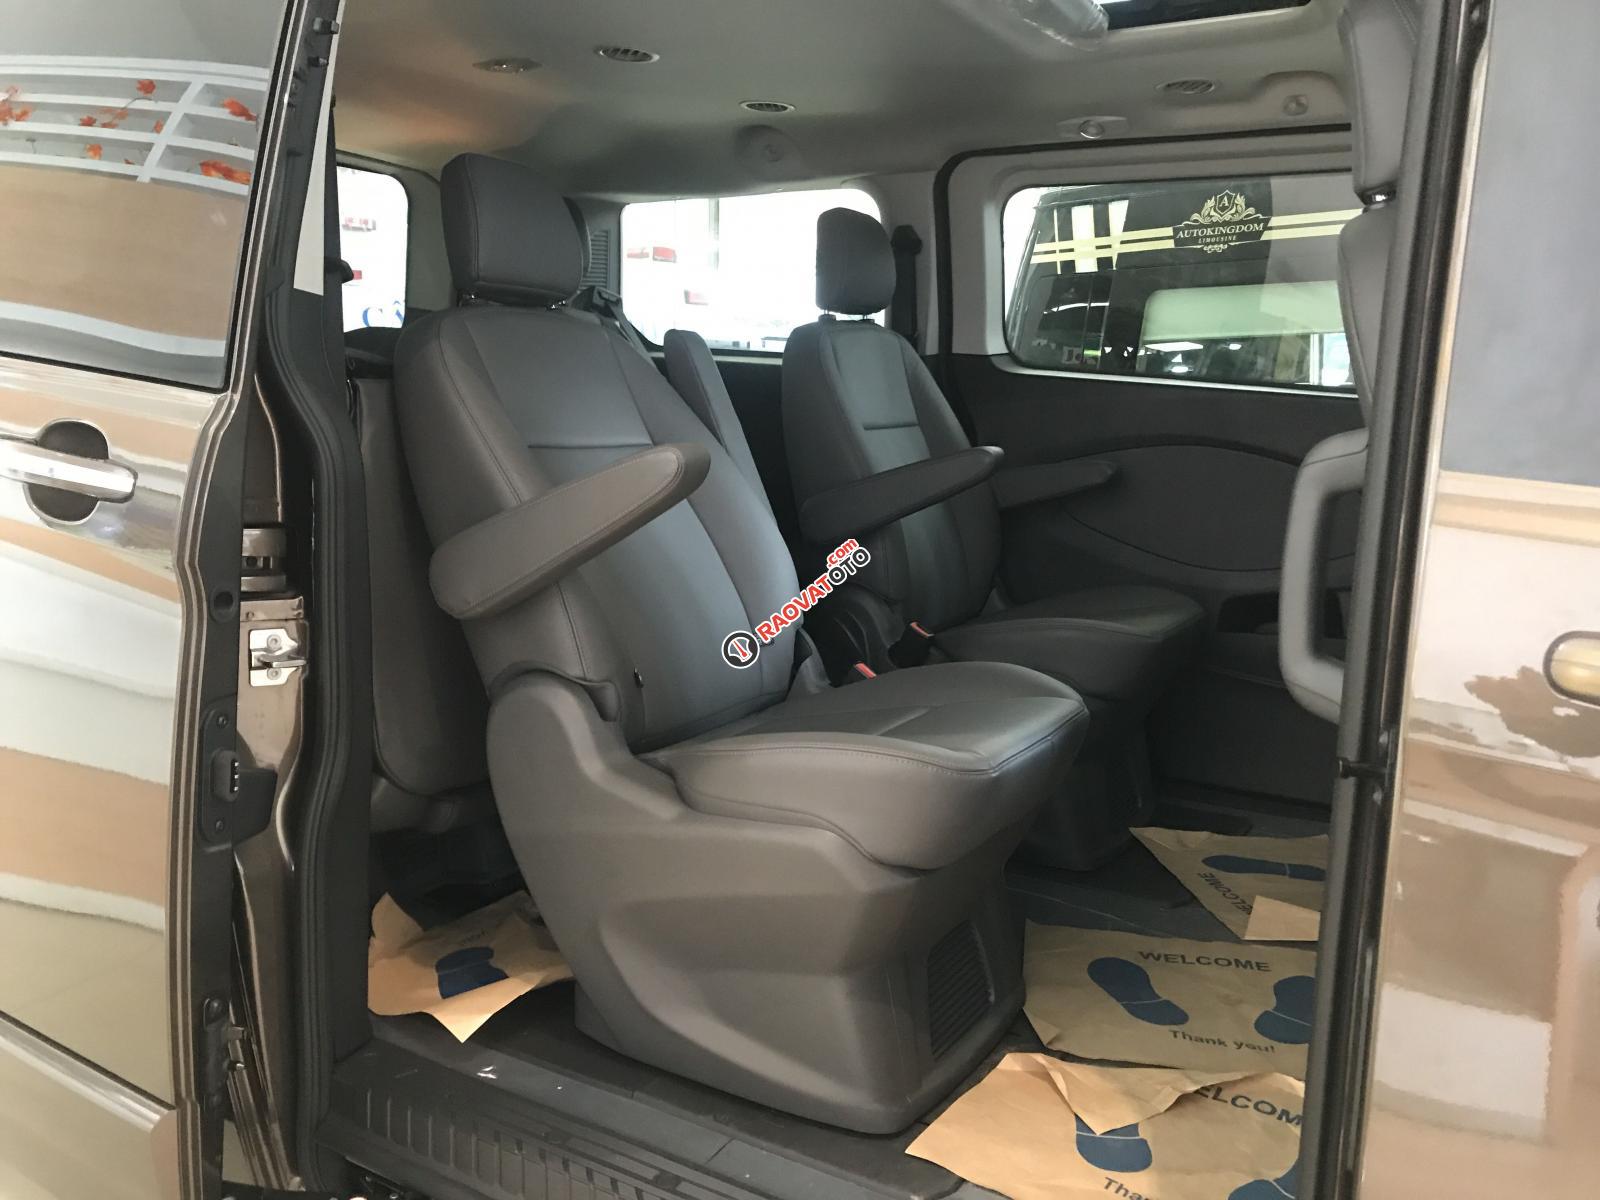 Ford Tourneo 2019 MPV thế hệ mới dòng xe gia đình đỉnh cao, đẹp xuất sắc-6